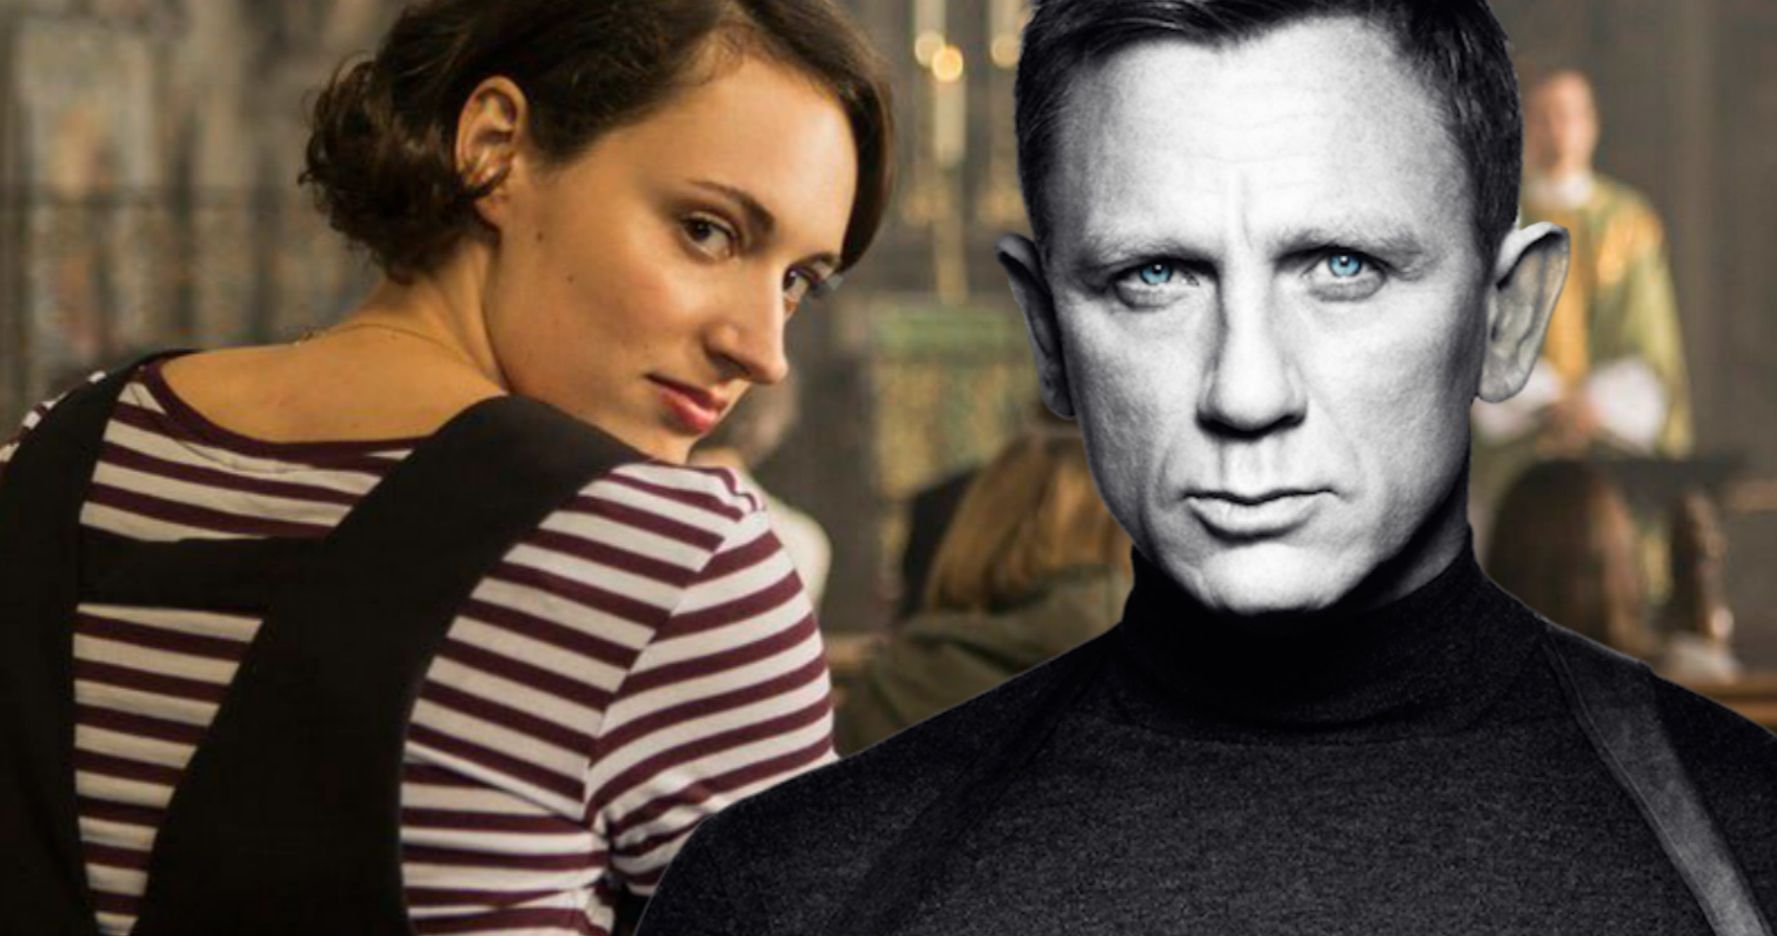 No Time to Die Writer Phoebe Waller-Bridge Returning for James Bond 26?